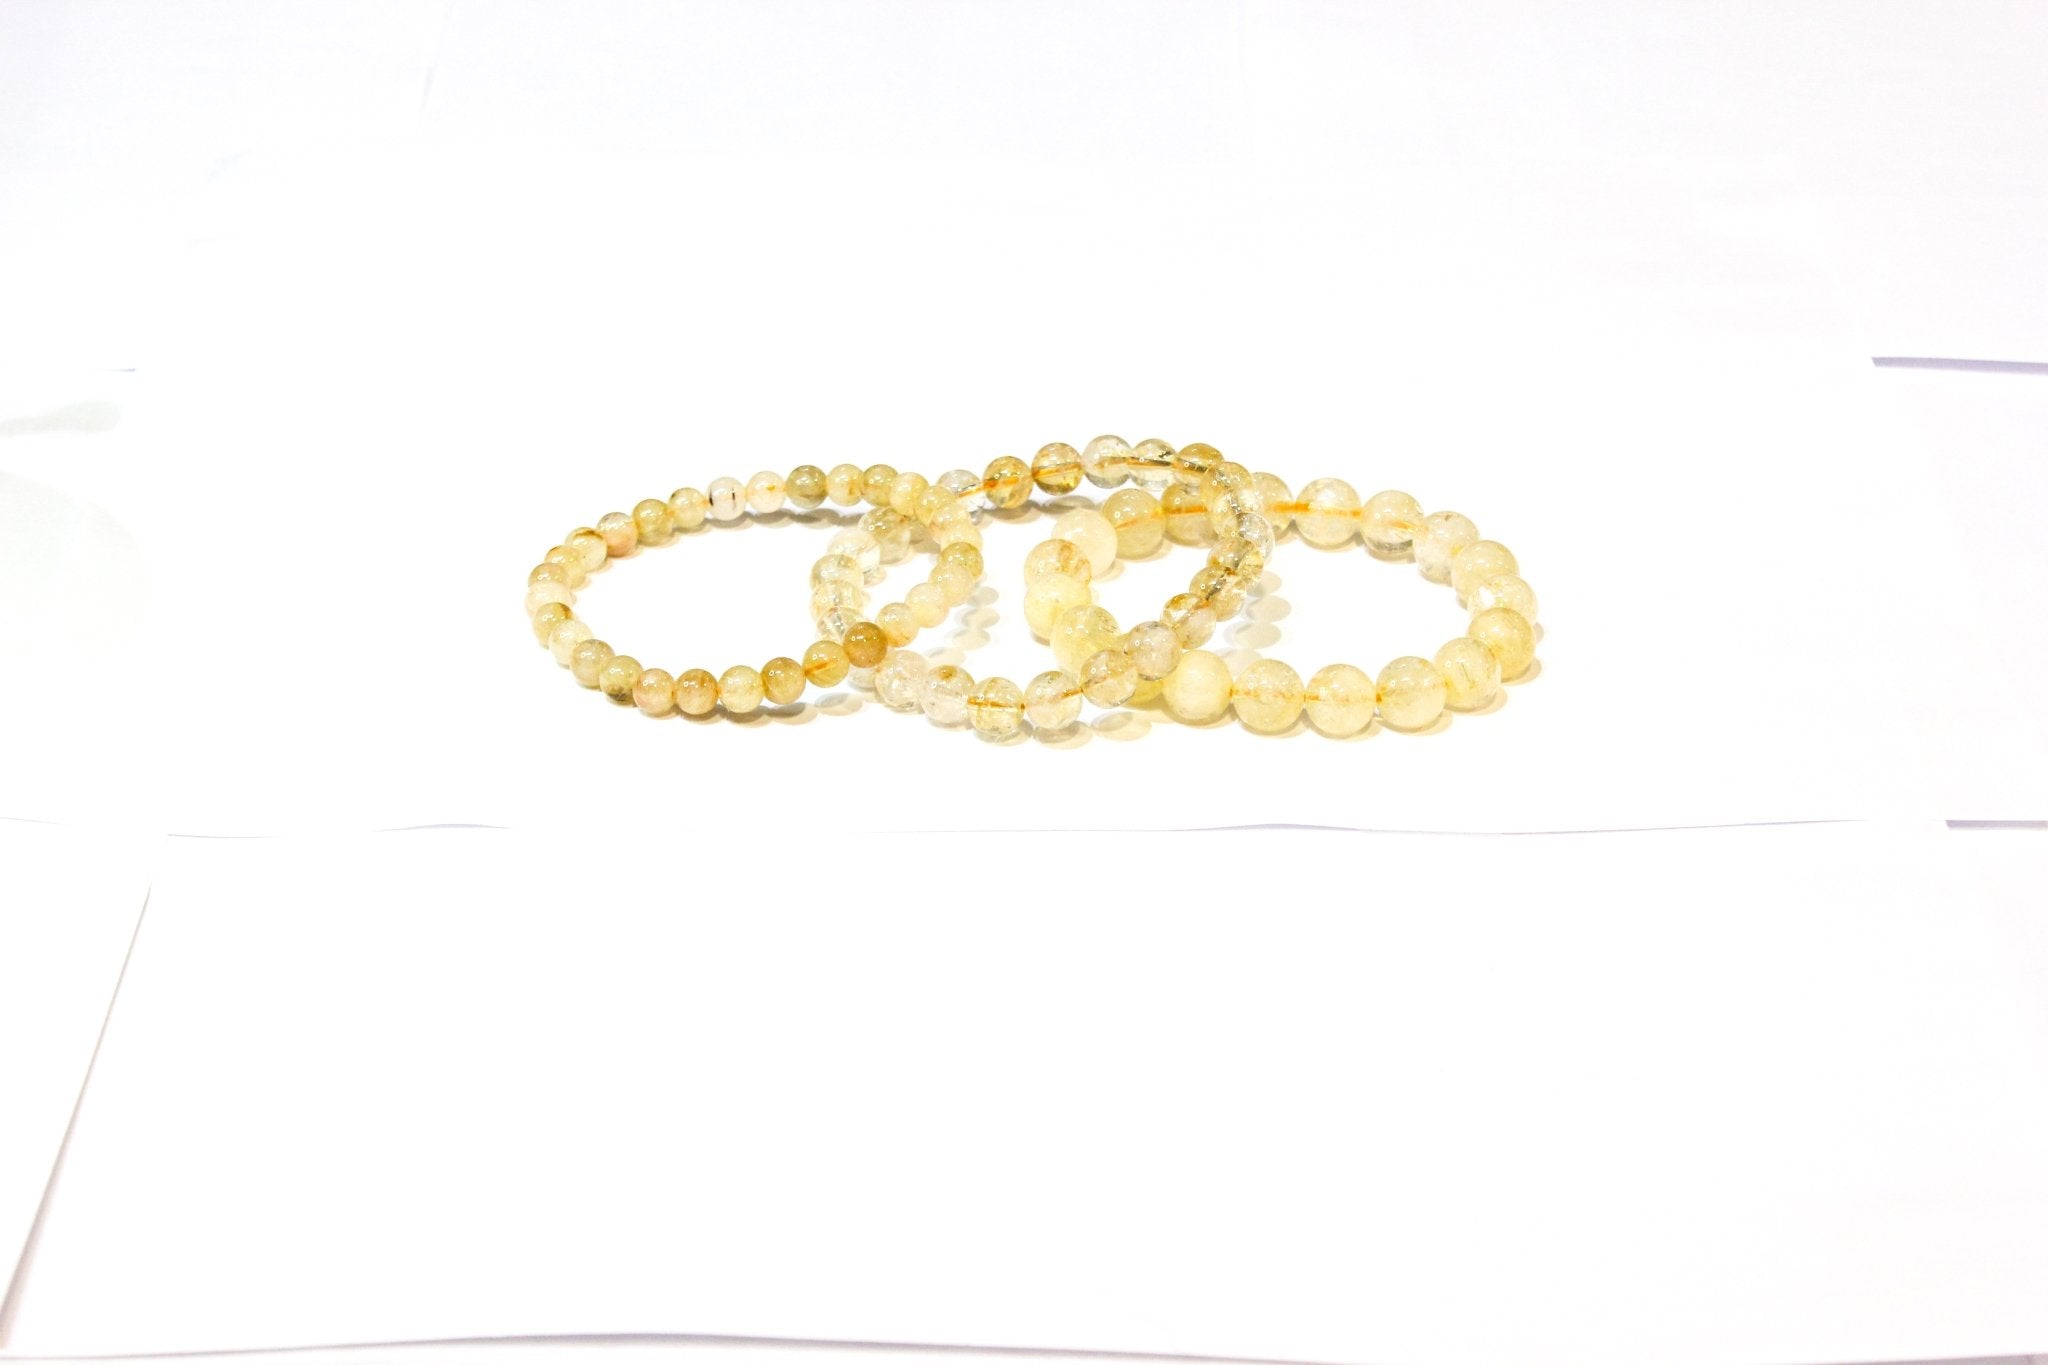 Citrine Stackable Bracelet - Sacred Crystals Bracelets